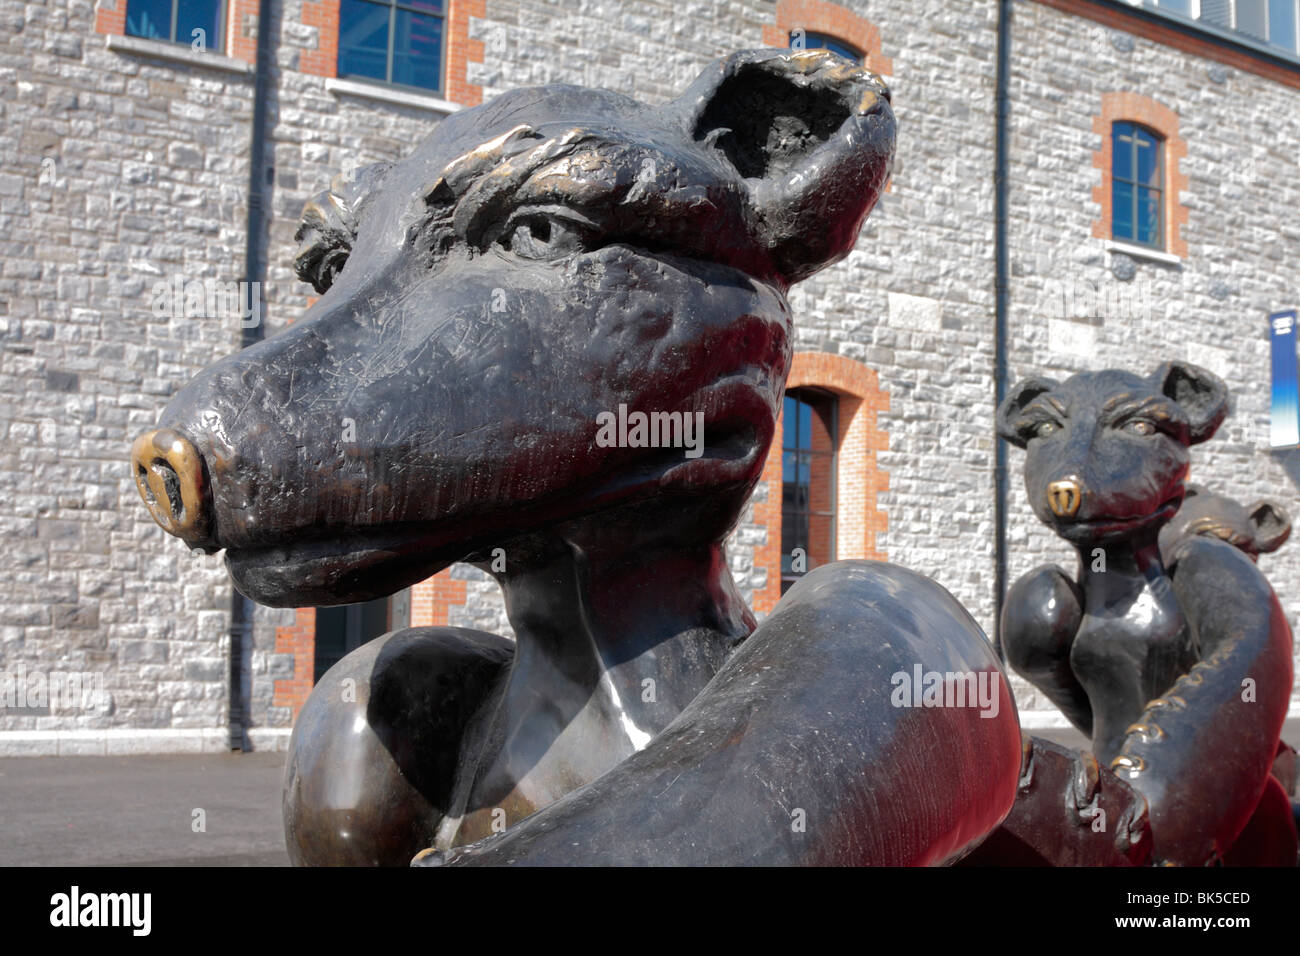 3 trägt 1 Gig keinen Brei, eine Skulptur von Patrick O Reilly außerhalb der O2-Arena in Dublin Irland Stockfoto